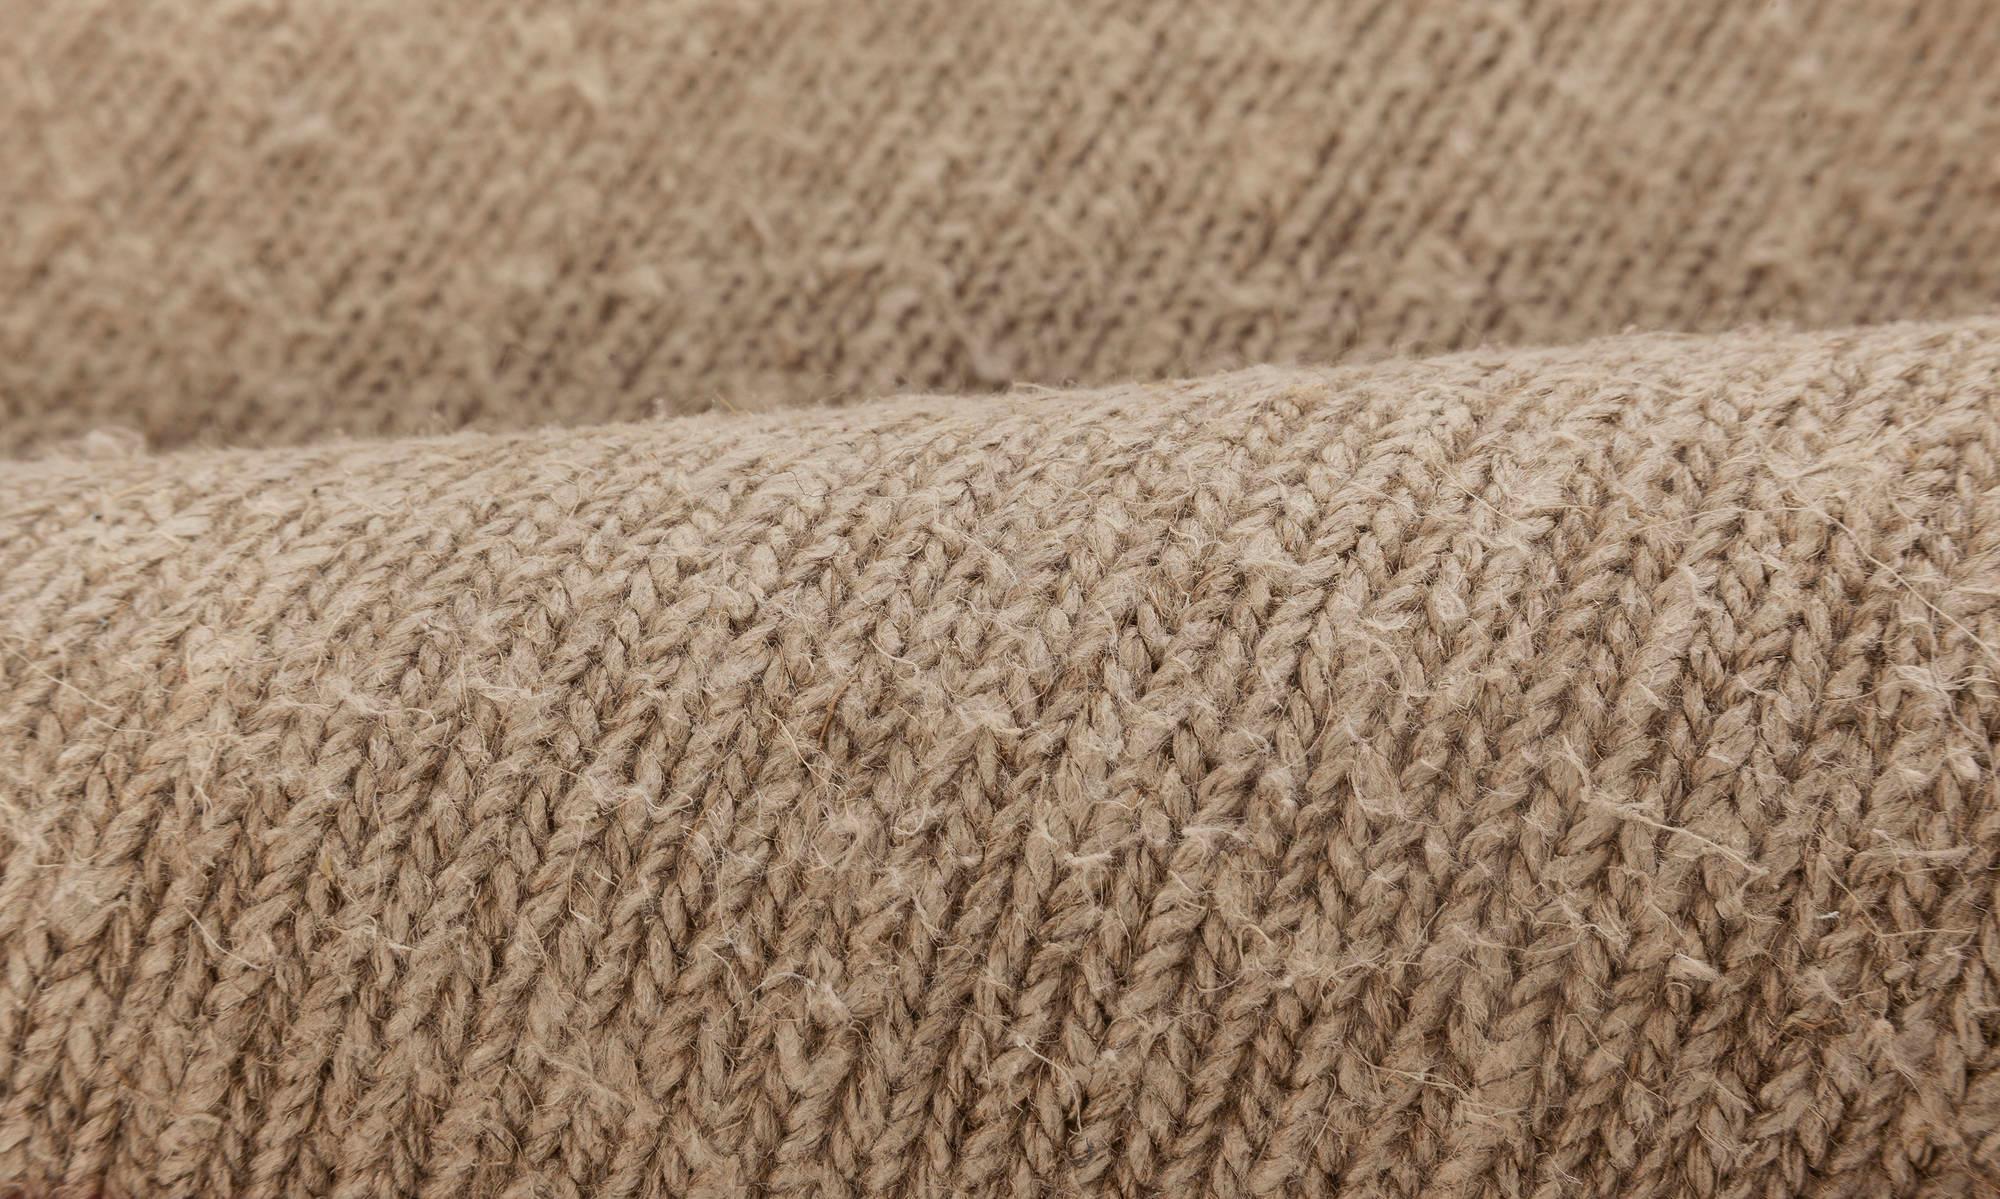 Modern Brown Flat Weave Wool rug by Doris Leslie Blau
Size: 6'9